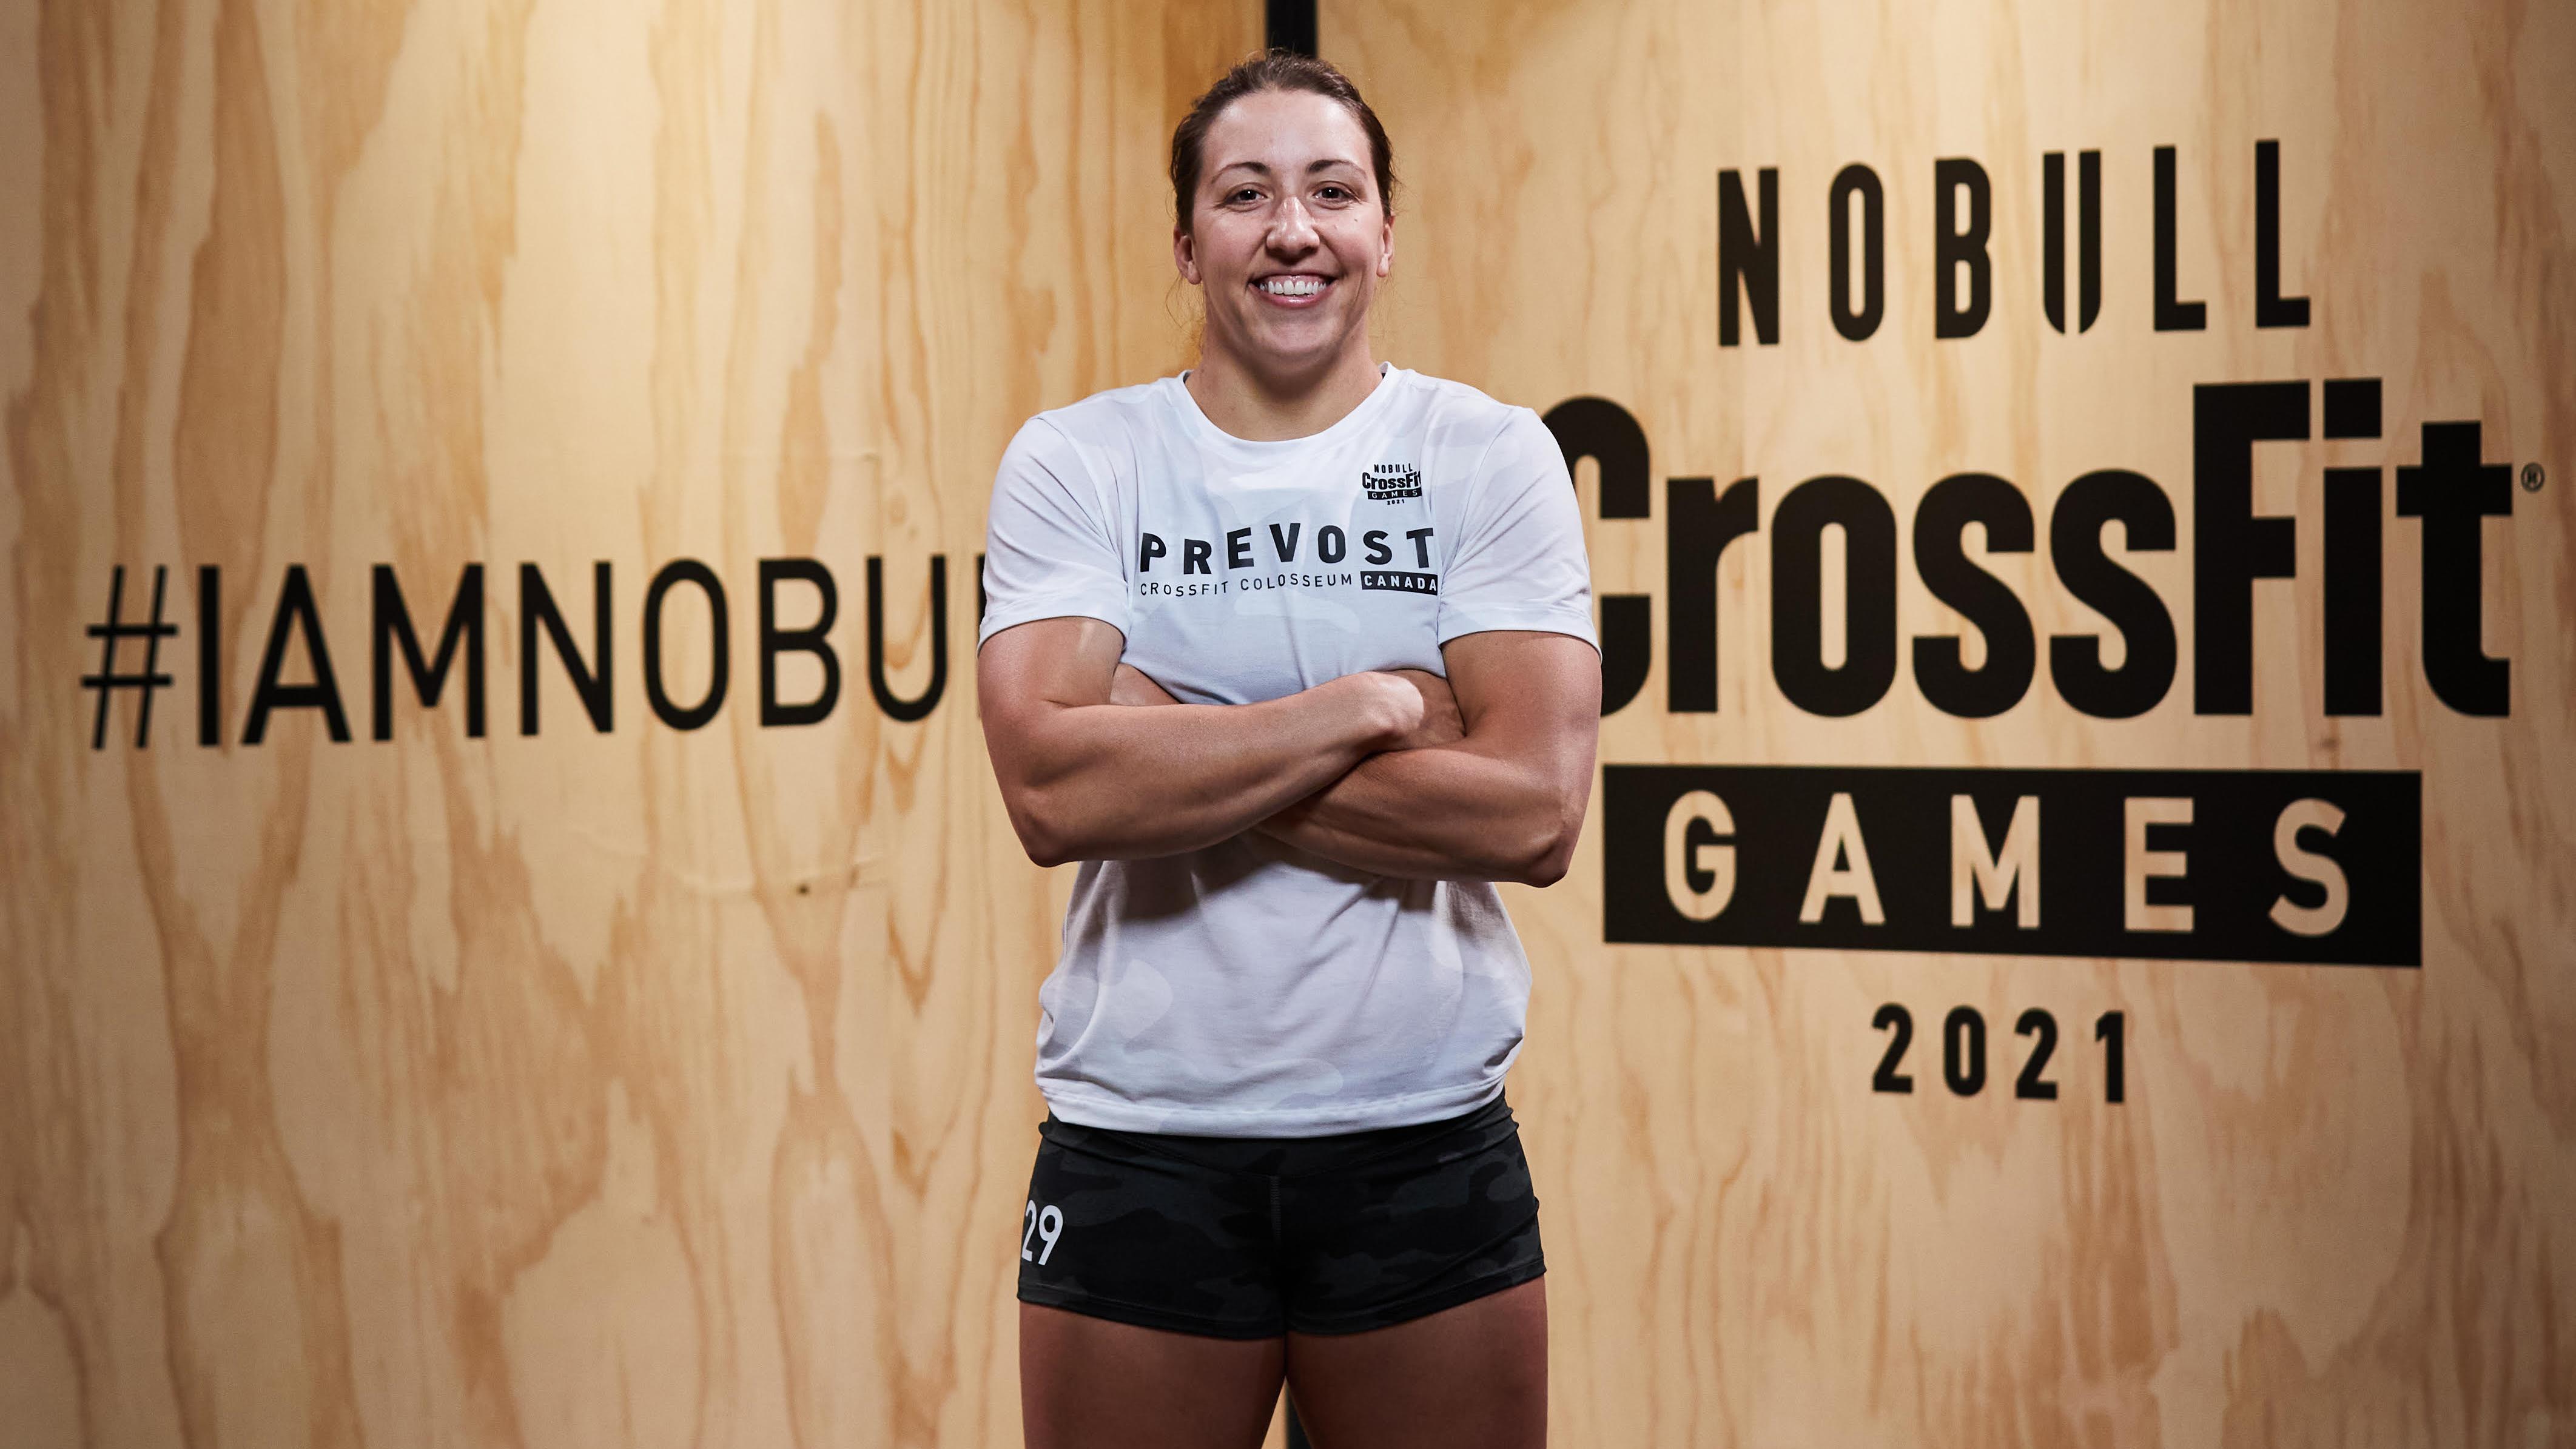 Carolyne Prévost s’est qualifiée pour les CrossFit Games
Carolyne Prévost s’est qualifiée pour les CrossFit Games